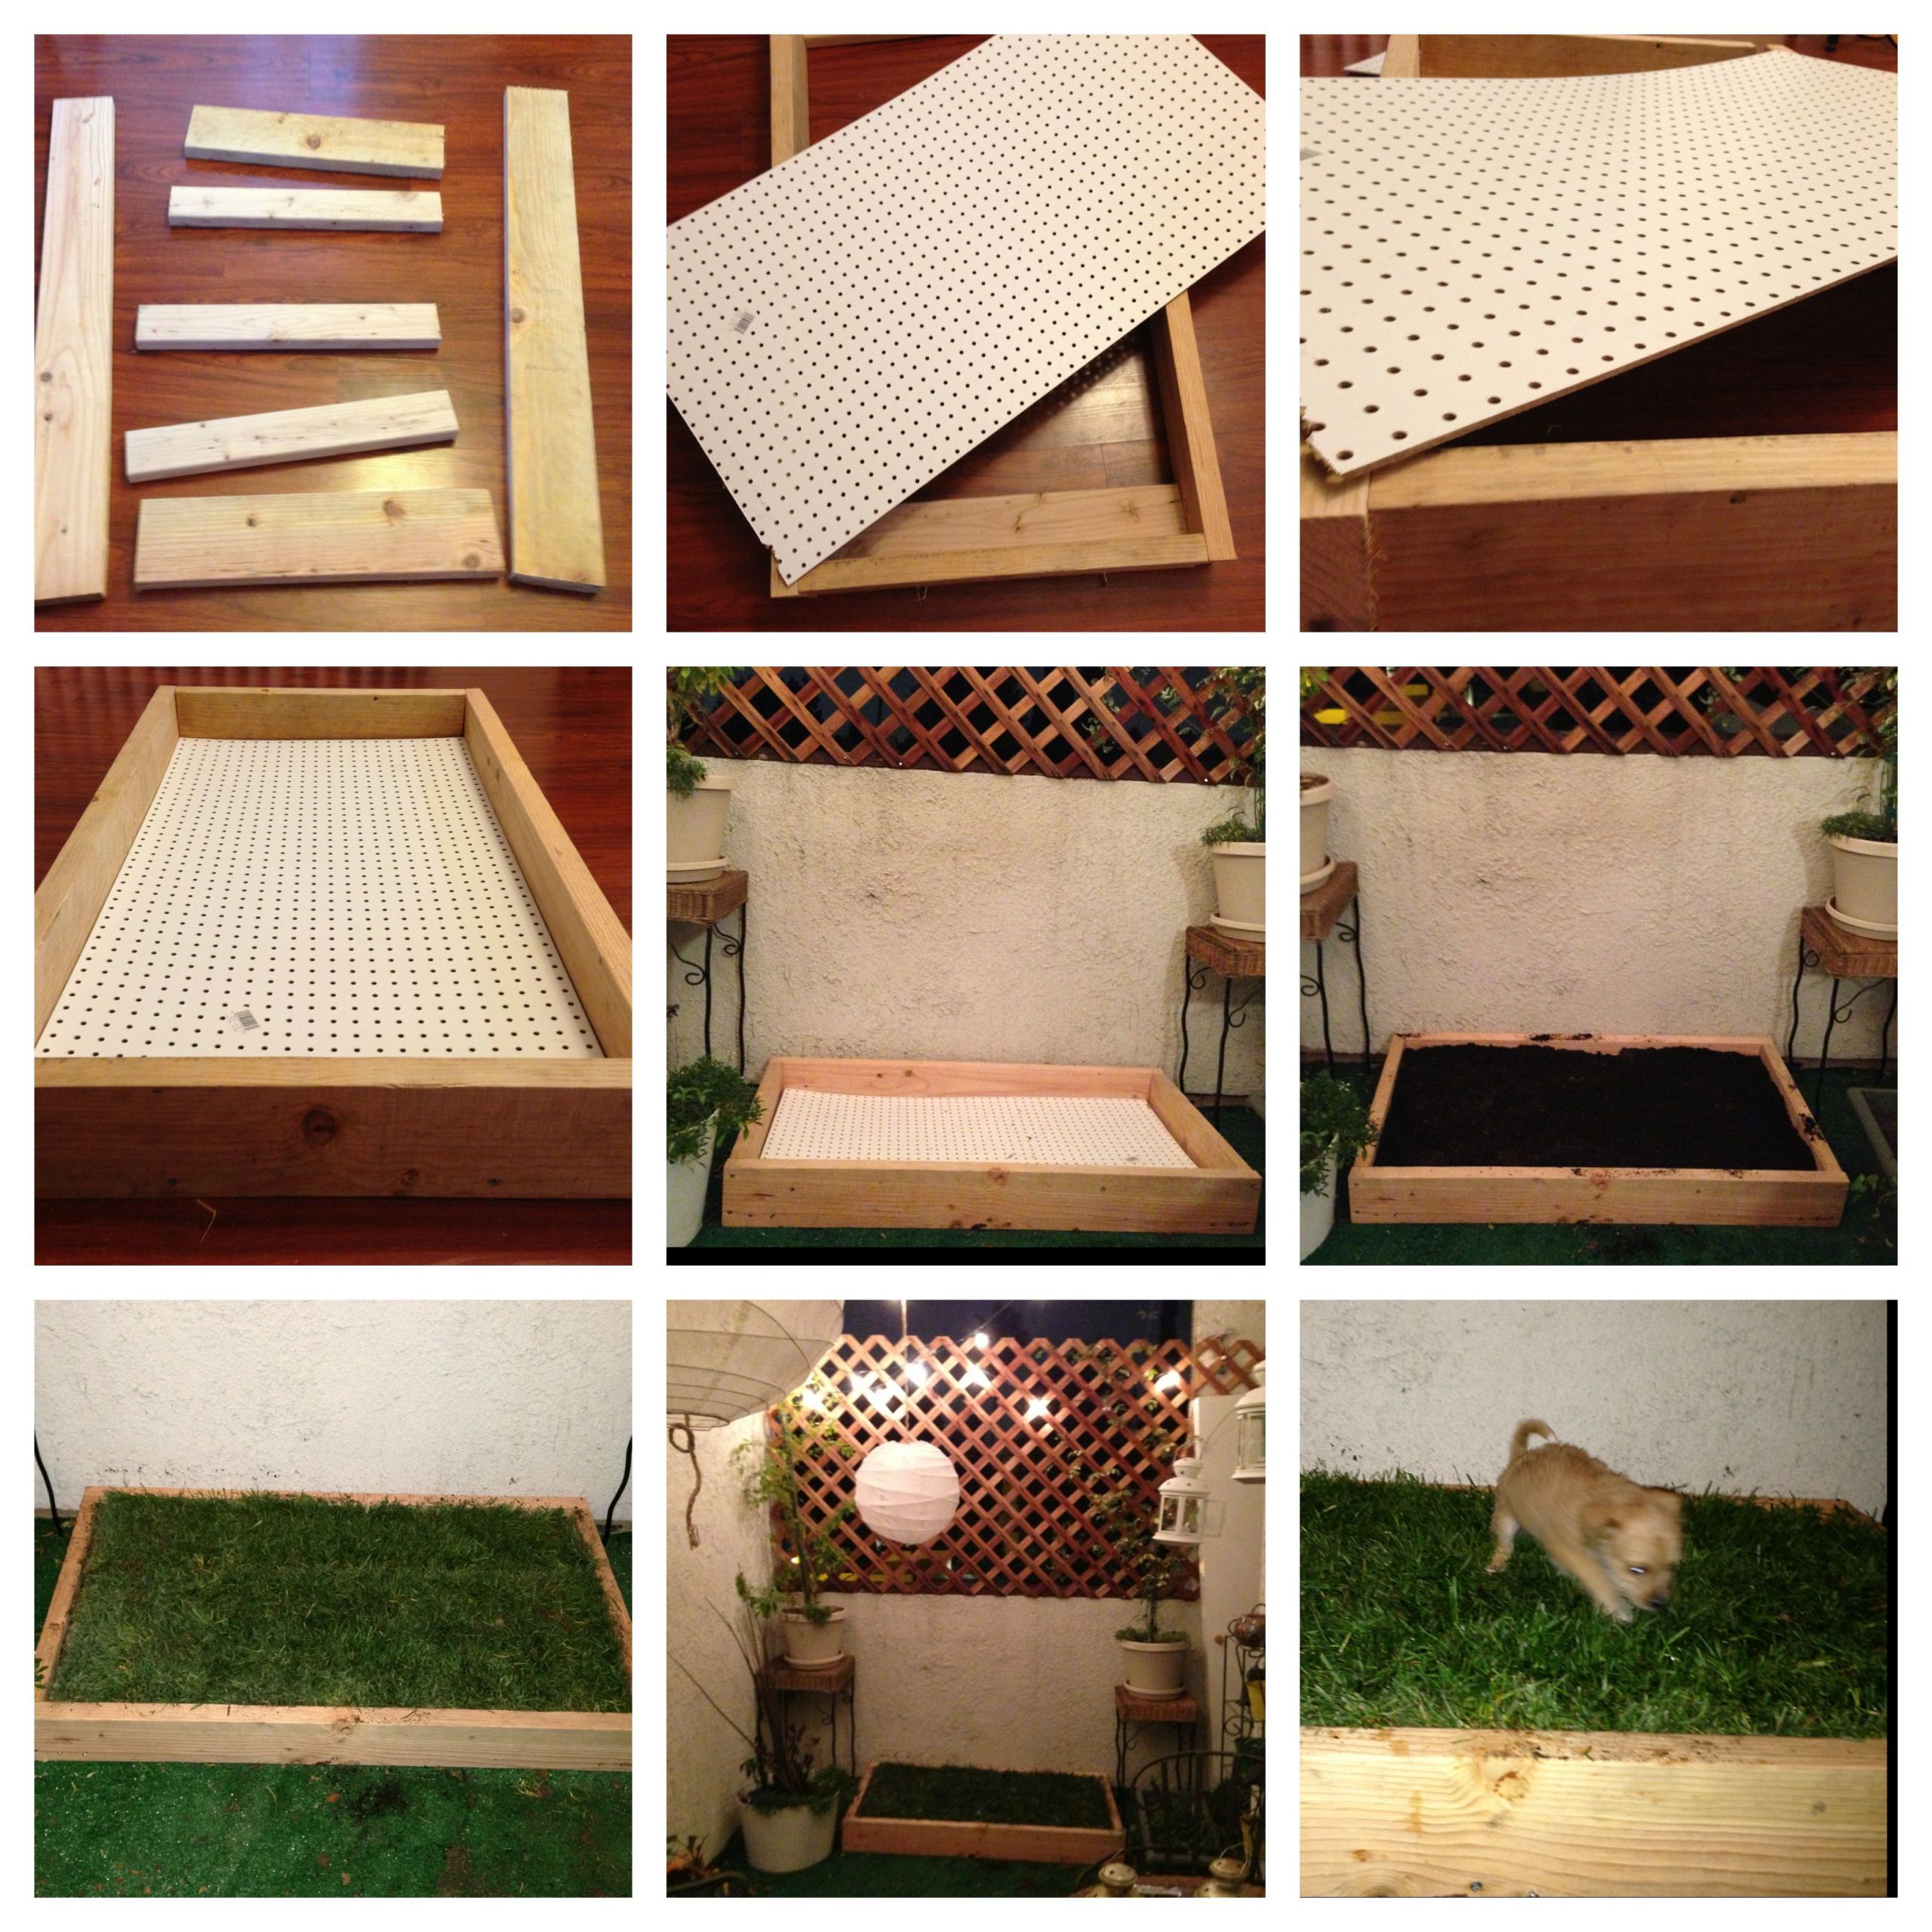 DIY Dog Potty Box
 DIY dog grass box Easy to make and less than $40 at Home